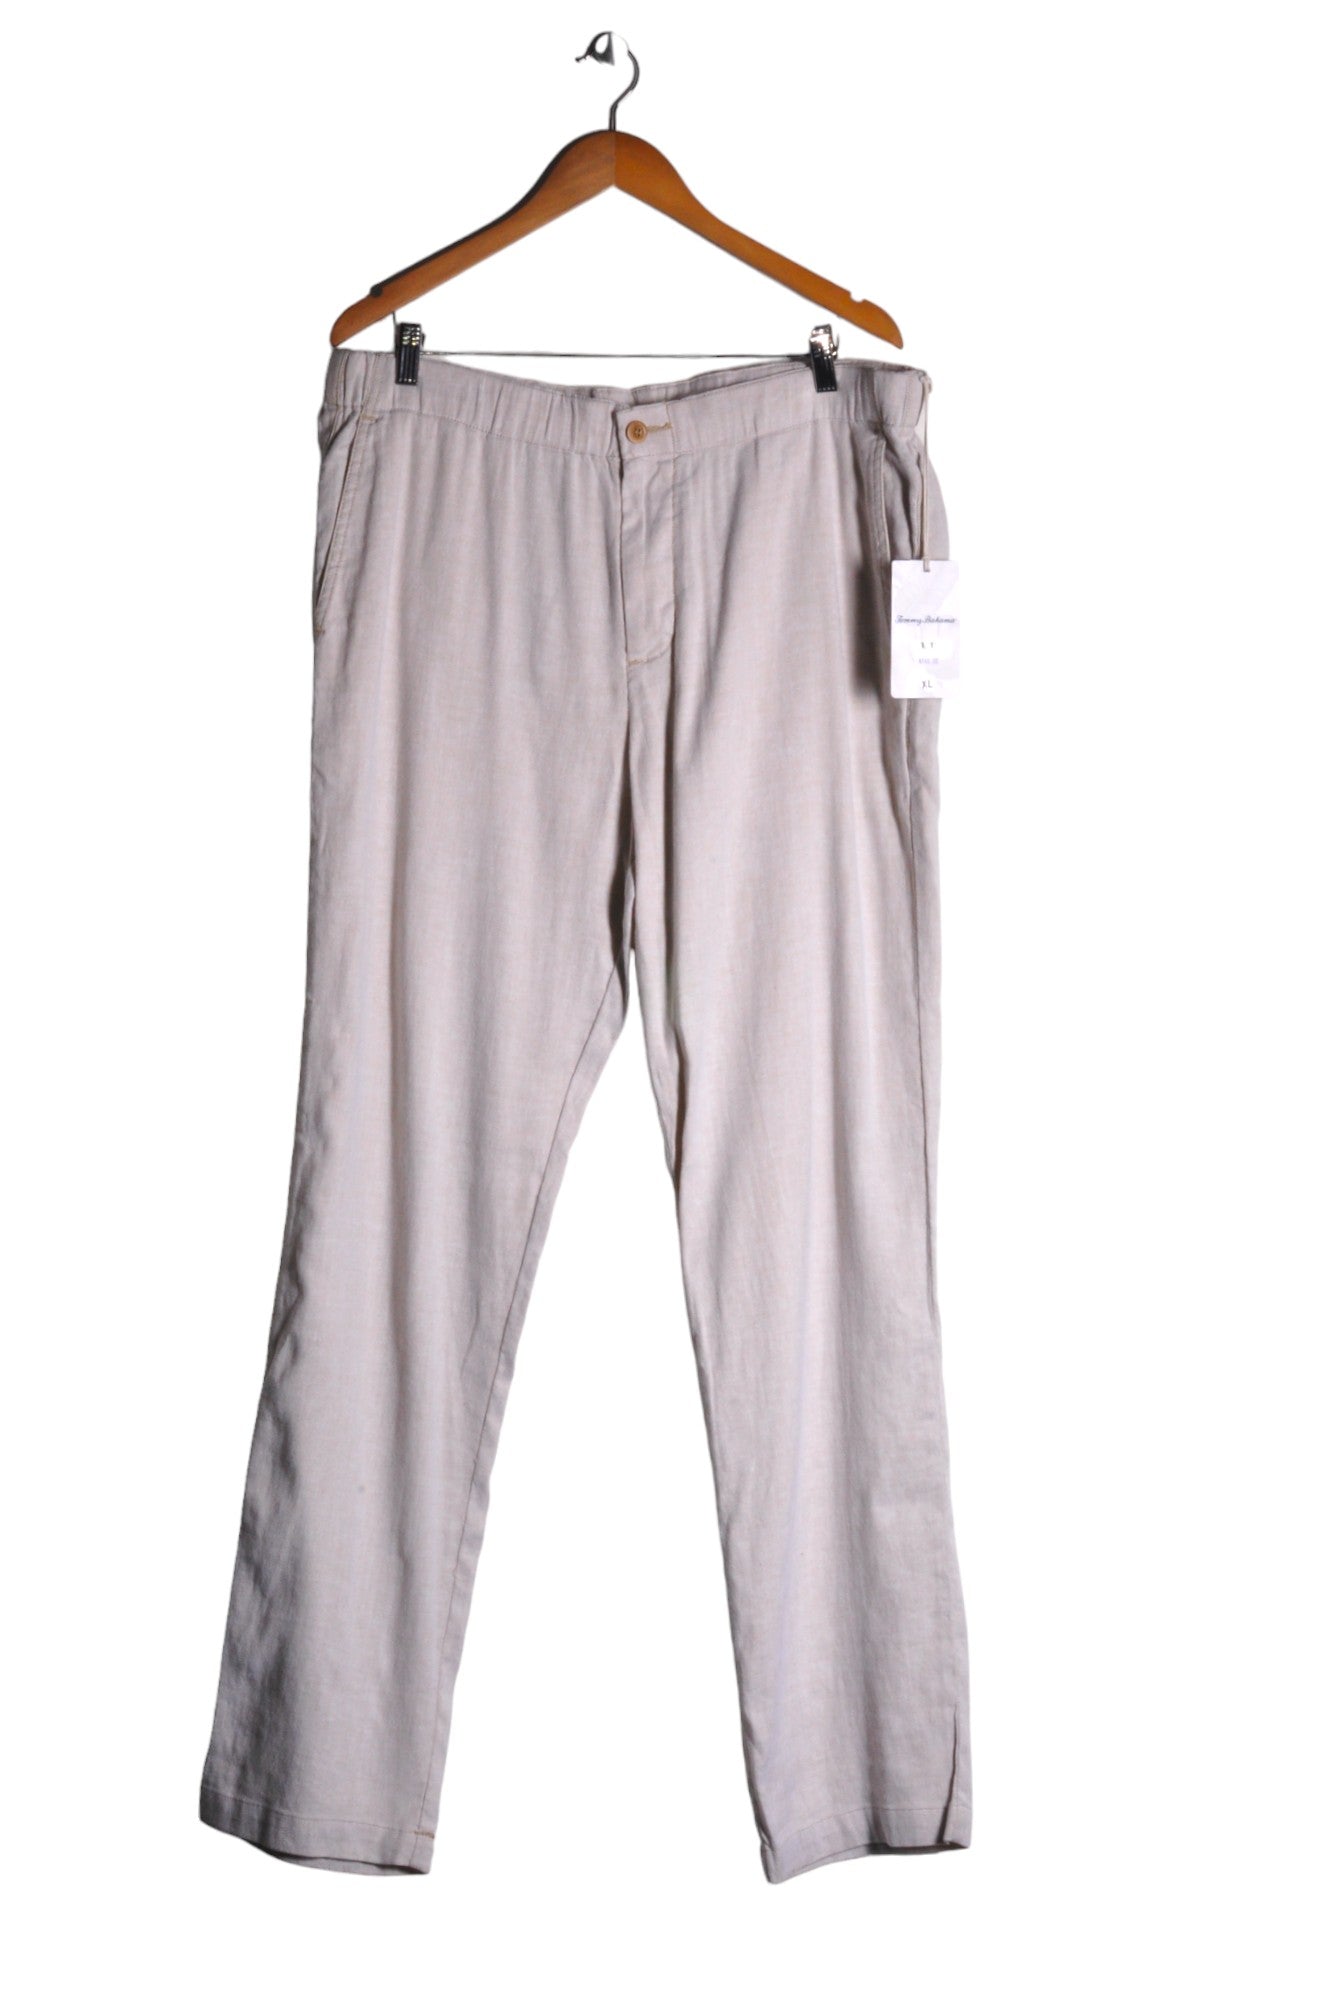 TOMMY BAHAMA Men Work Pants Regular fit in Beige - Size XL | 85 $ KOOP